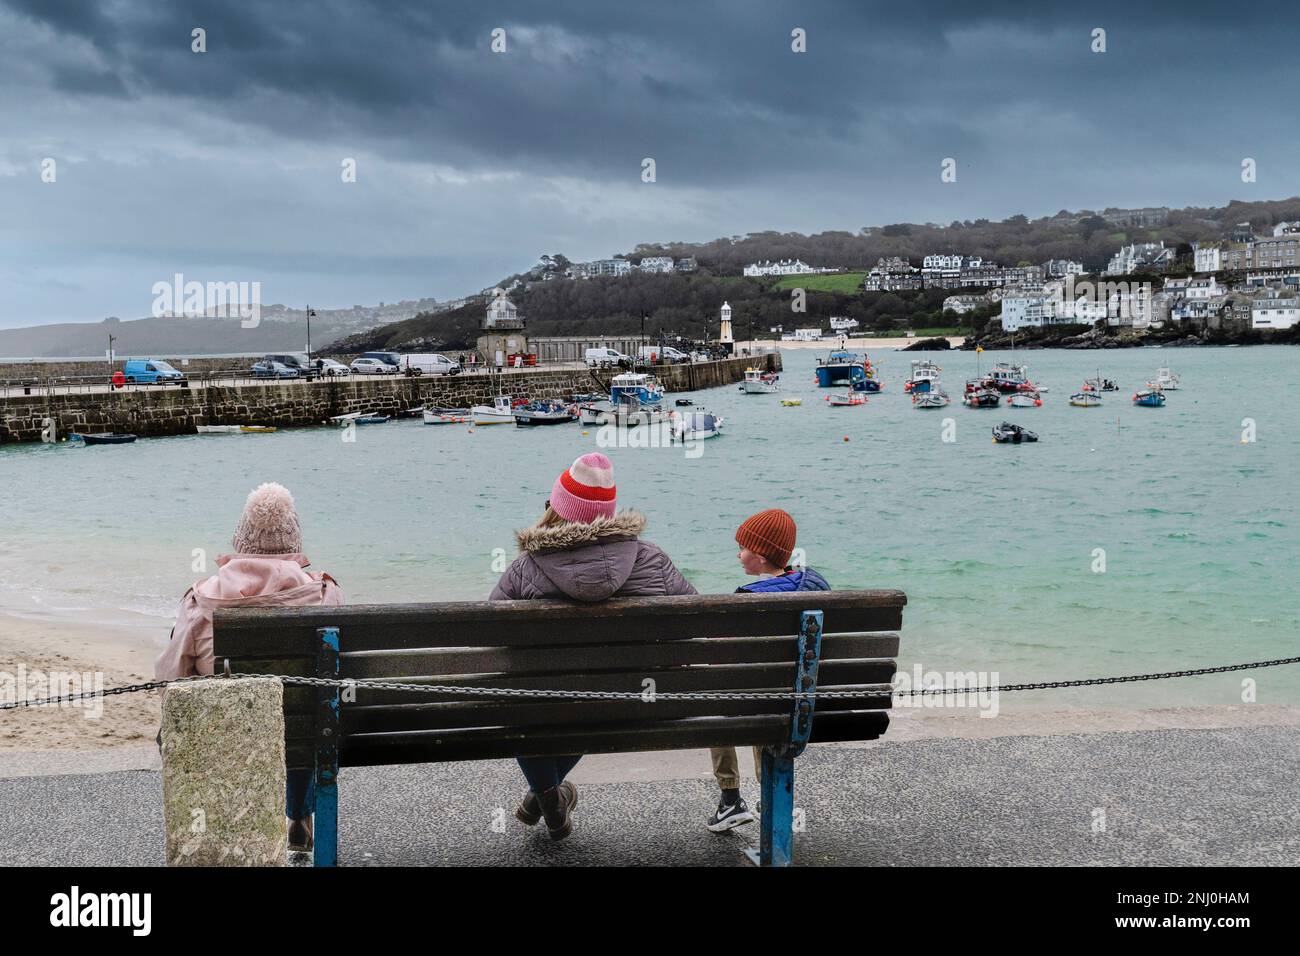 El tiempo del Reino Unido. Visitantes sentados en un banco en un día lluvioso y frío miserable en la histórica ciudad costera de St Ives en Cornwall, Inglaterra, en el Reino Unido. Foto de stock